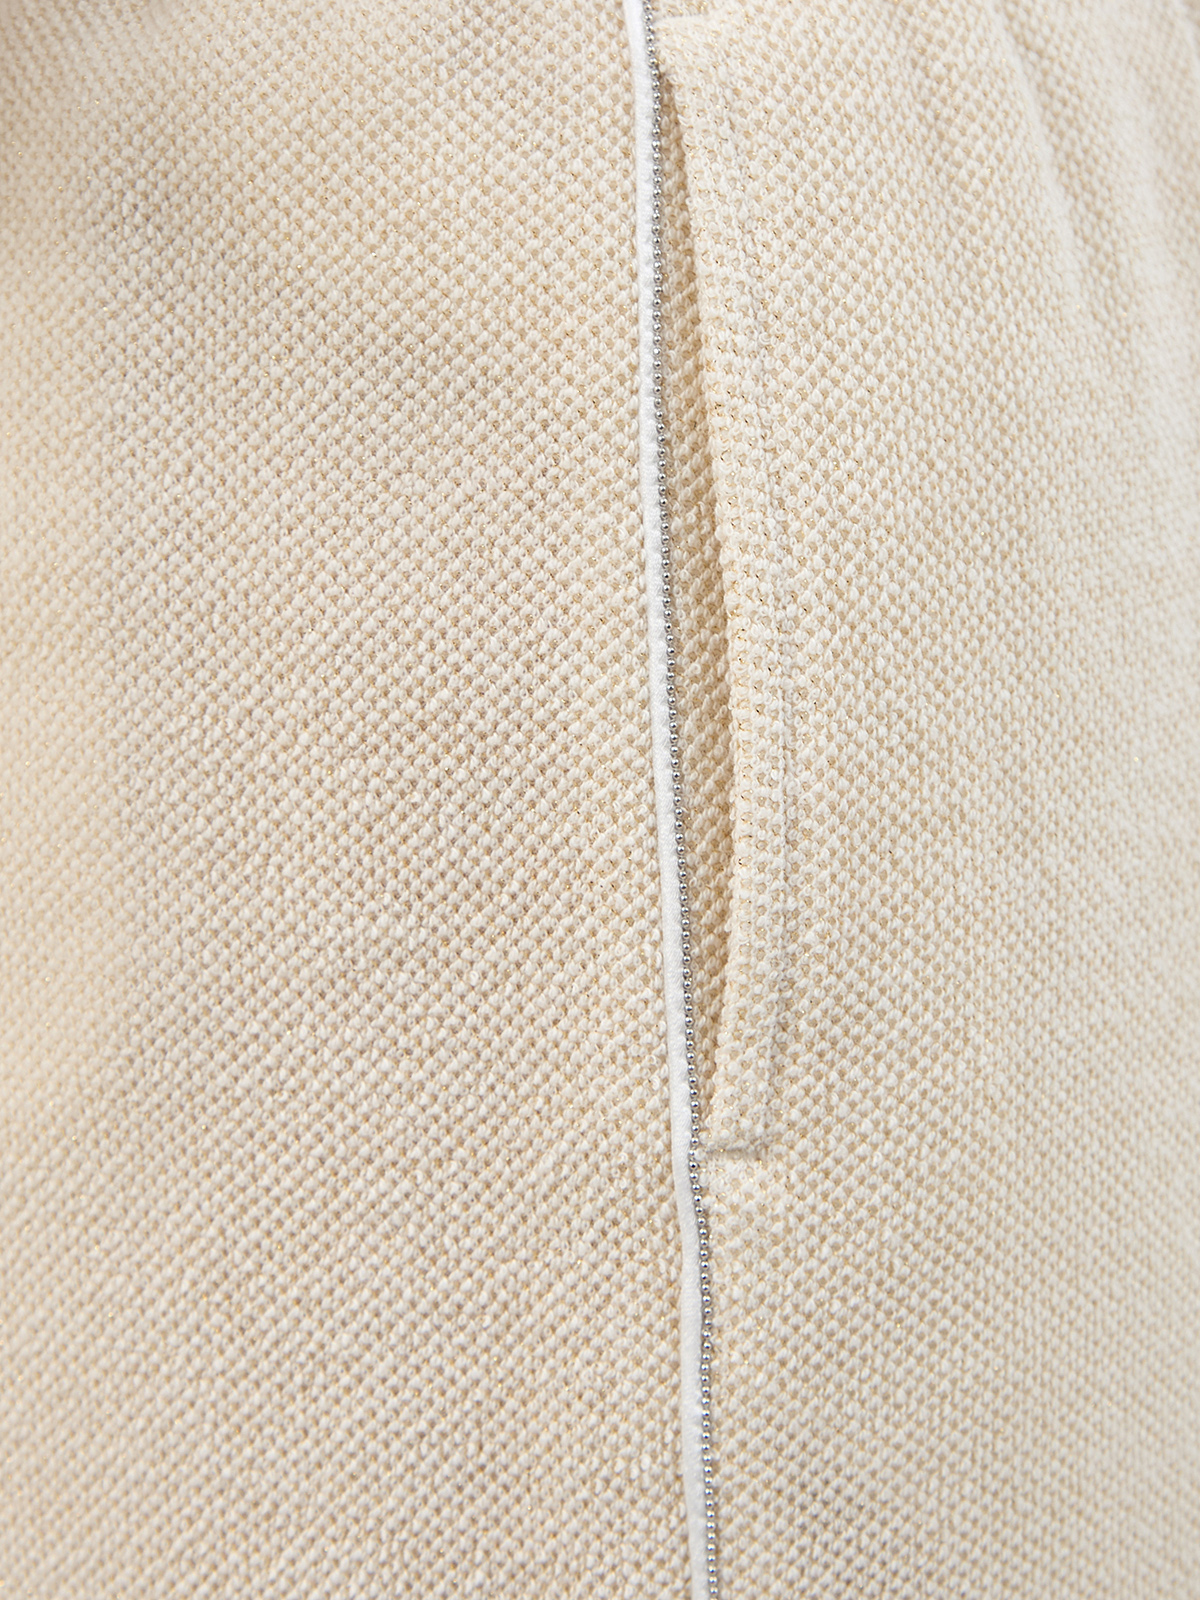 Хлопковые шорты с мерцающей нитью ламе и цепочками PESERICO, цвет бежевый, размер 38;44;46 - фото 5